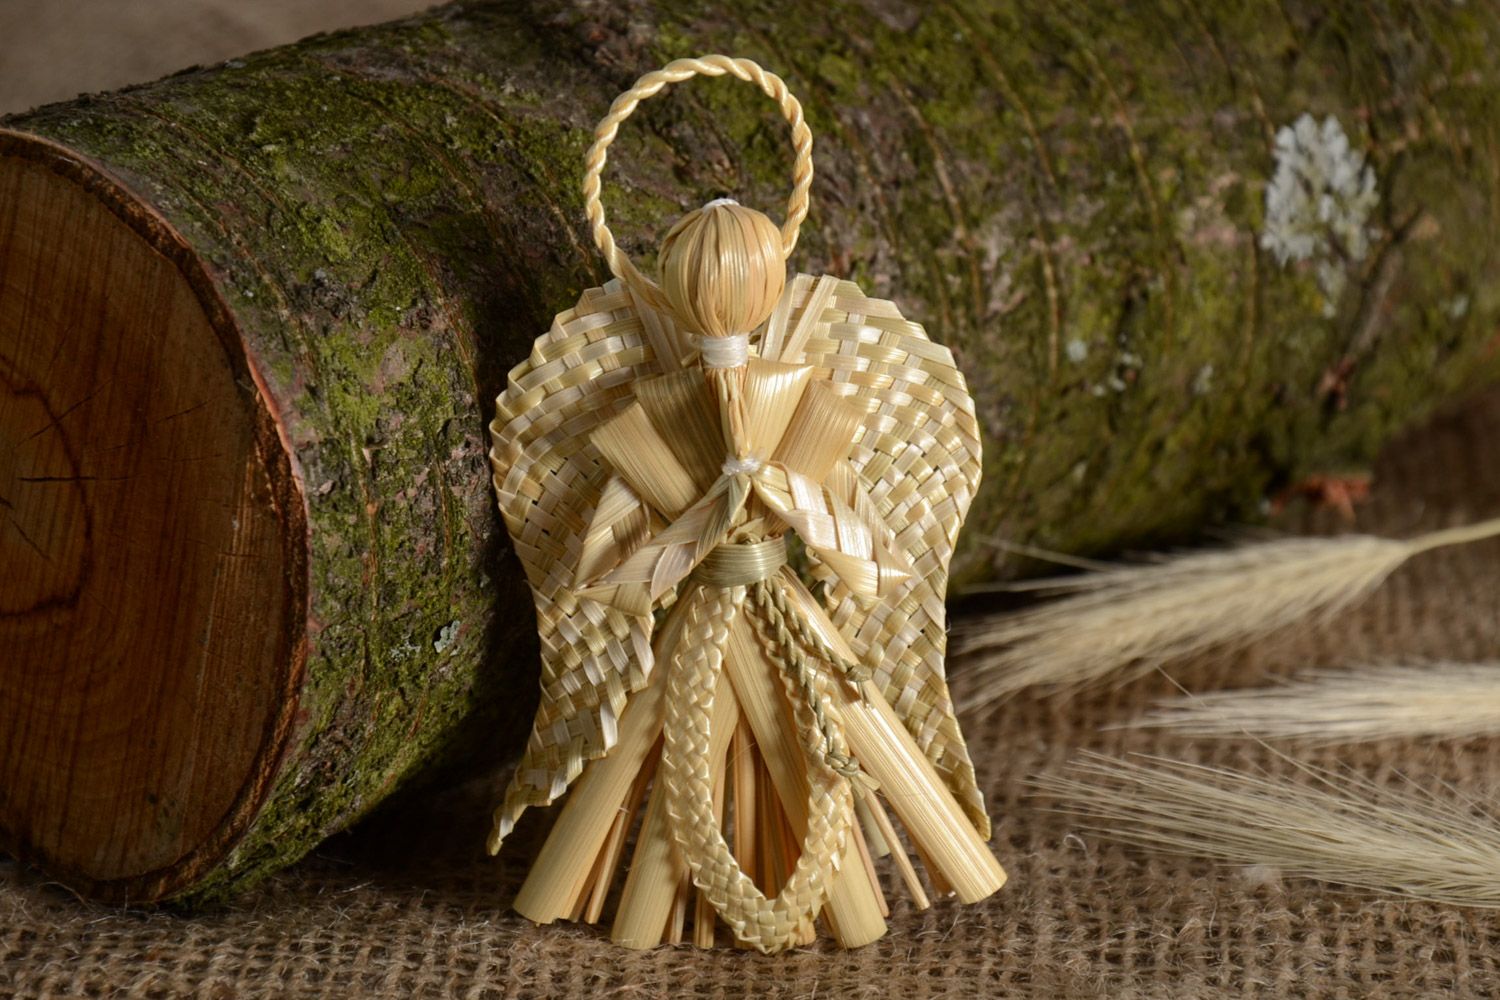 Ангел-хранитель из соломы плетеный вручную интерьерная подвеска в эко стиле фото 1